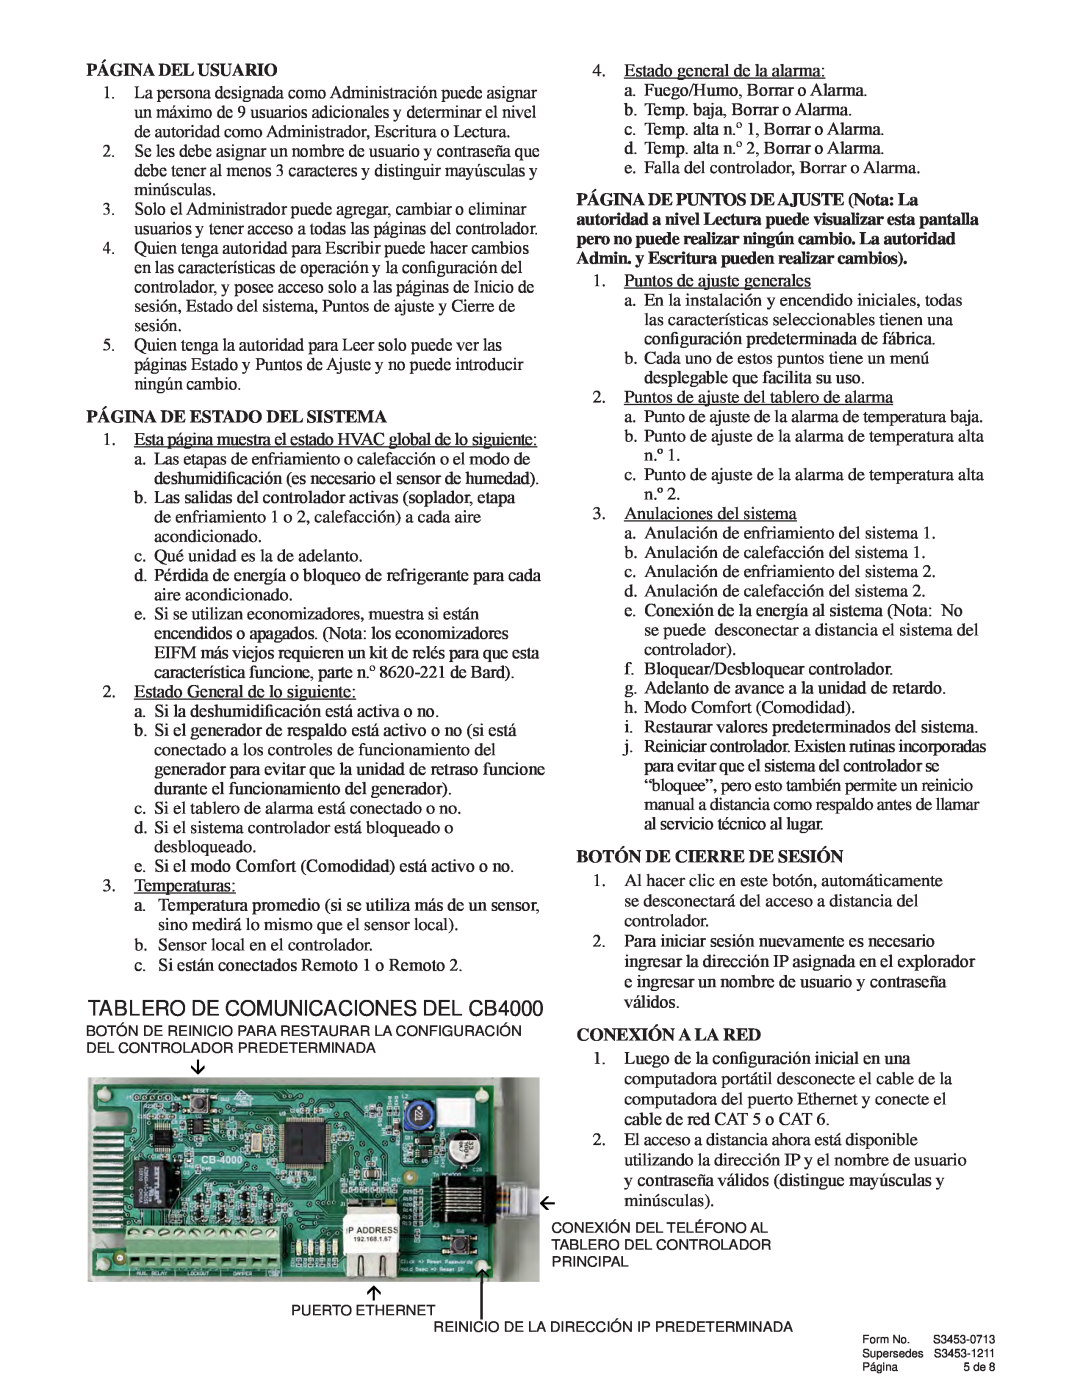 Bard Series MC4000S manual Página Del Usuario, Página De Estado Del Sistema, Botón De Cierre De Sesión, Conexión A La Red 